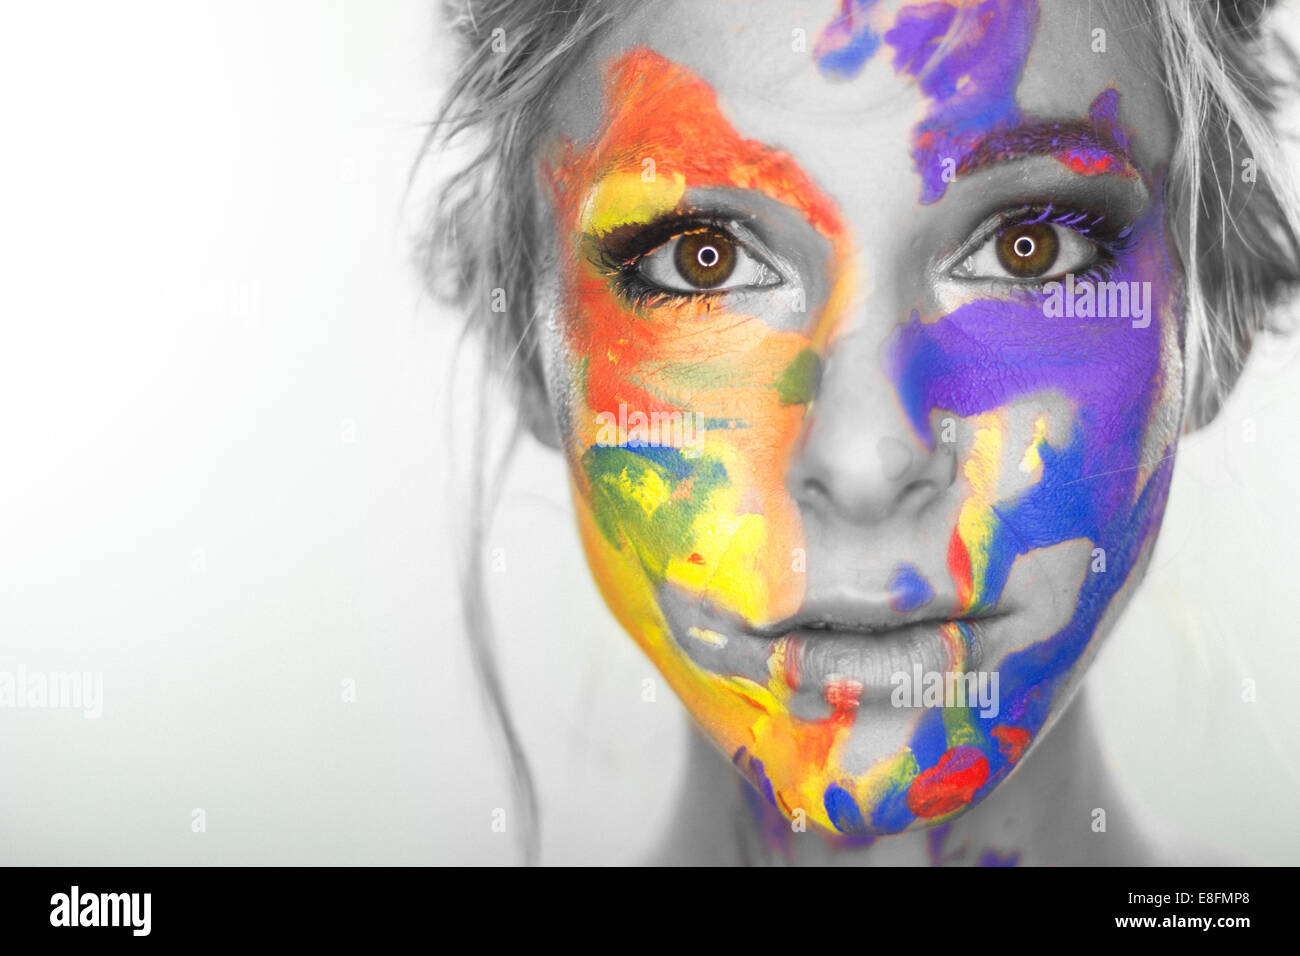 Retrato de mujer con pintura multicolor en su rostro Fotografía stock -